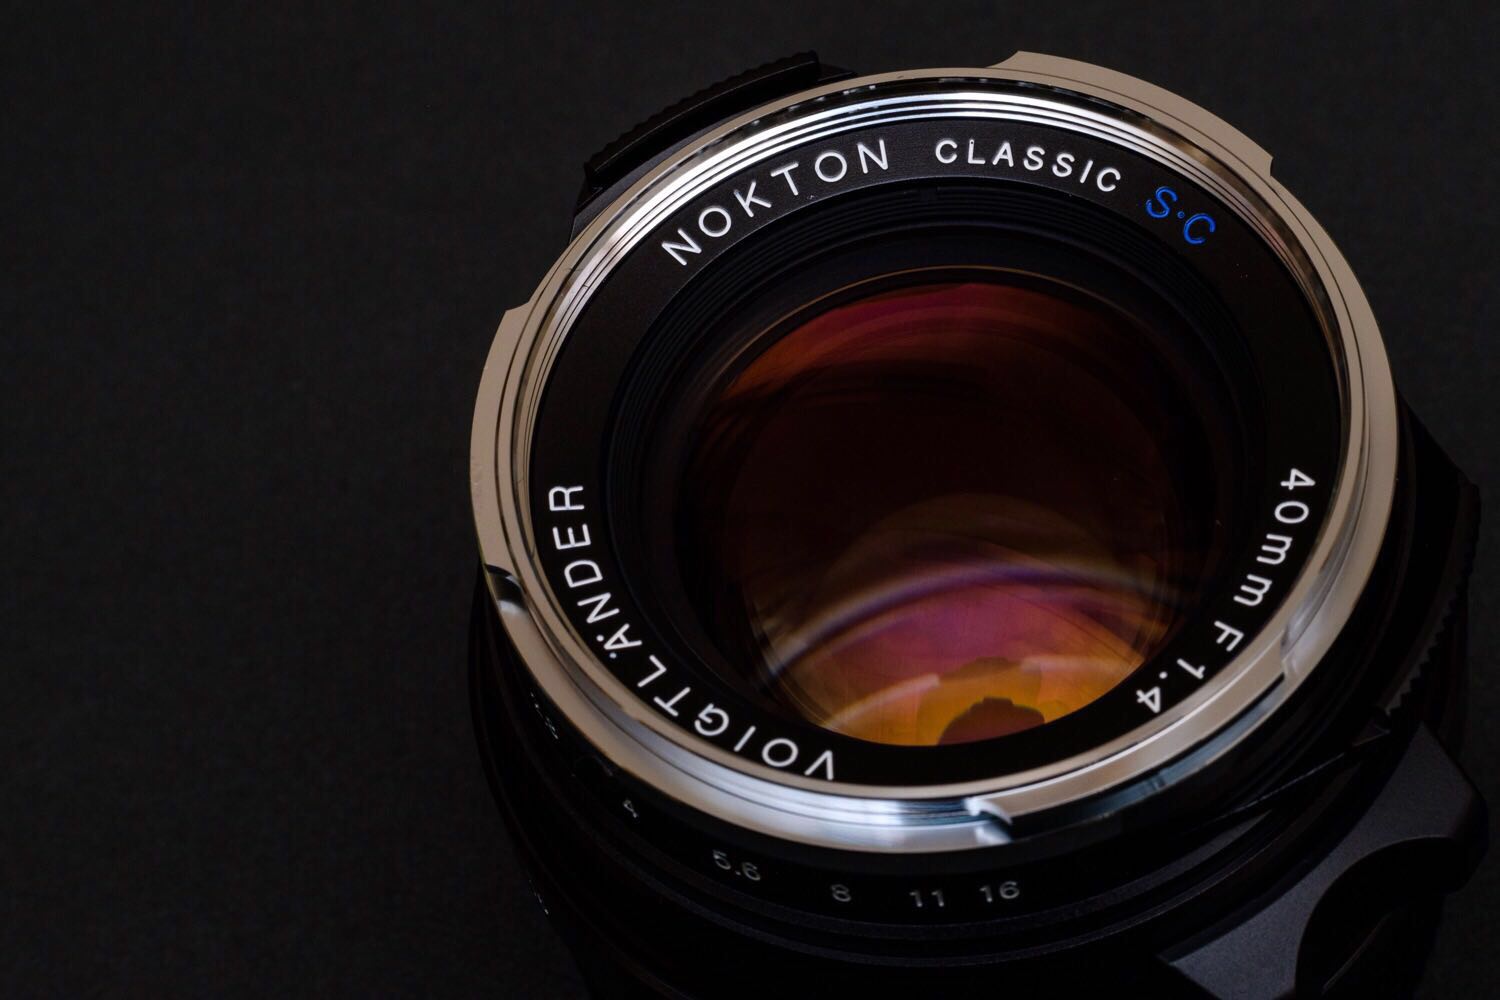 NOKTON Classic 40mm F1.4を購入した理由やX-Pro2に装着してのファーストインプレッション。 - ほぼしゅふブログ